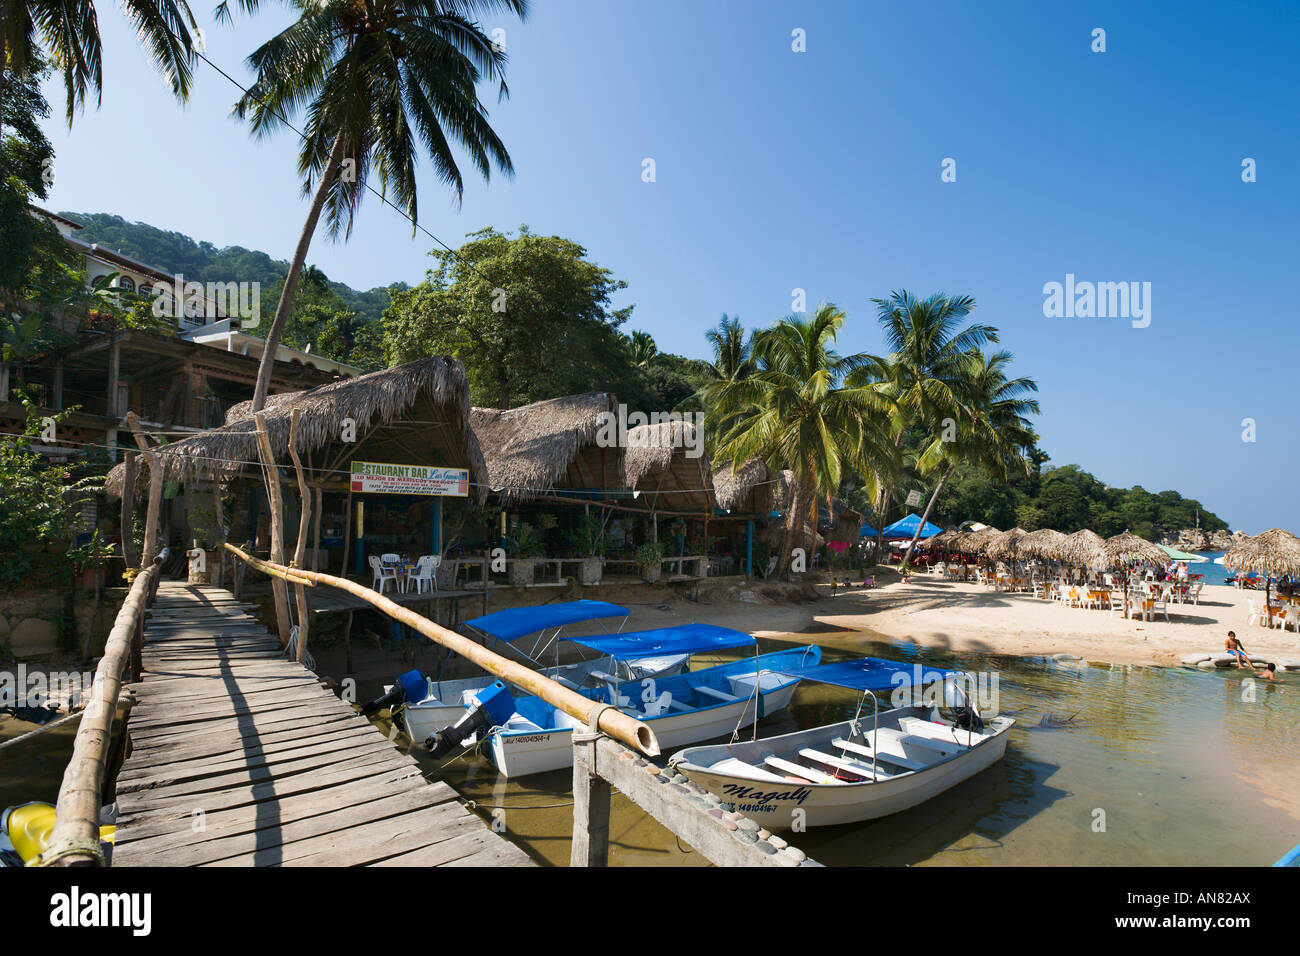 Beachfront Restaurant and Boats on Mismaloya River, Mismaloya, Puerto Vallarta, Jalisco, Pacific Coast, Mexico Stock Photo